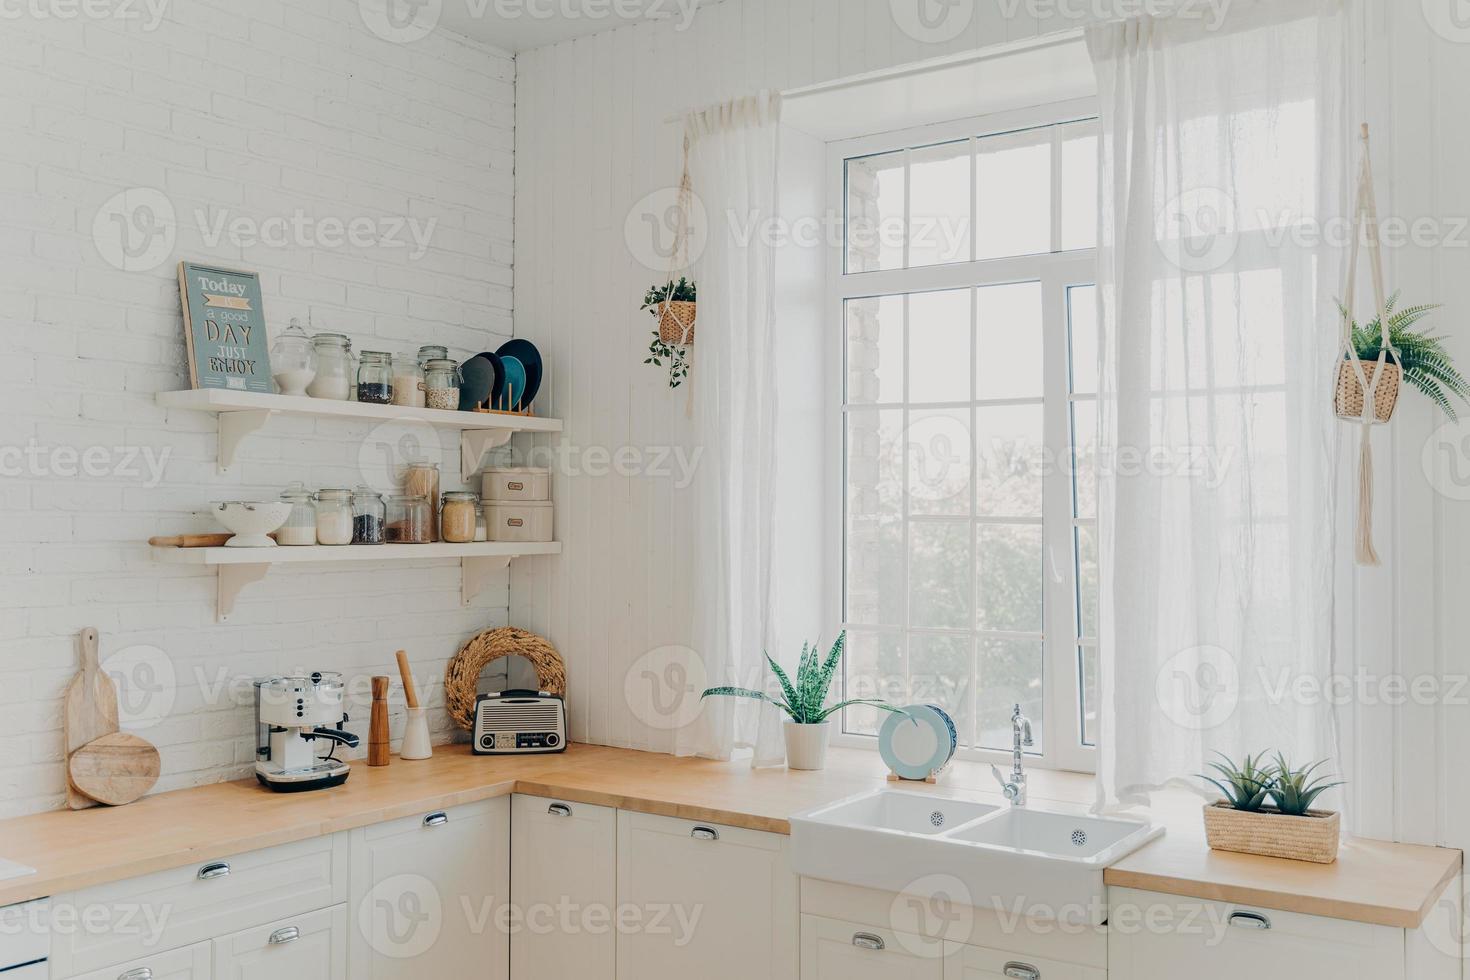 cozinha familiar doméstica. interior da cozinha escandinava bem iluminado com janela. apartamento moderno. foto